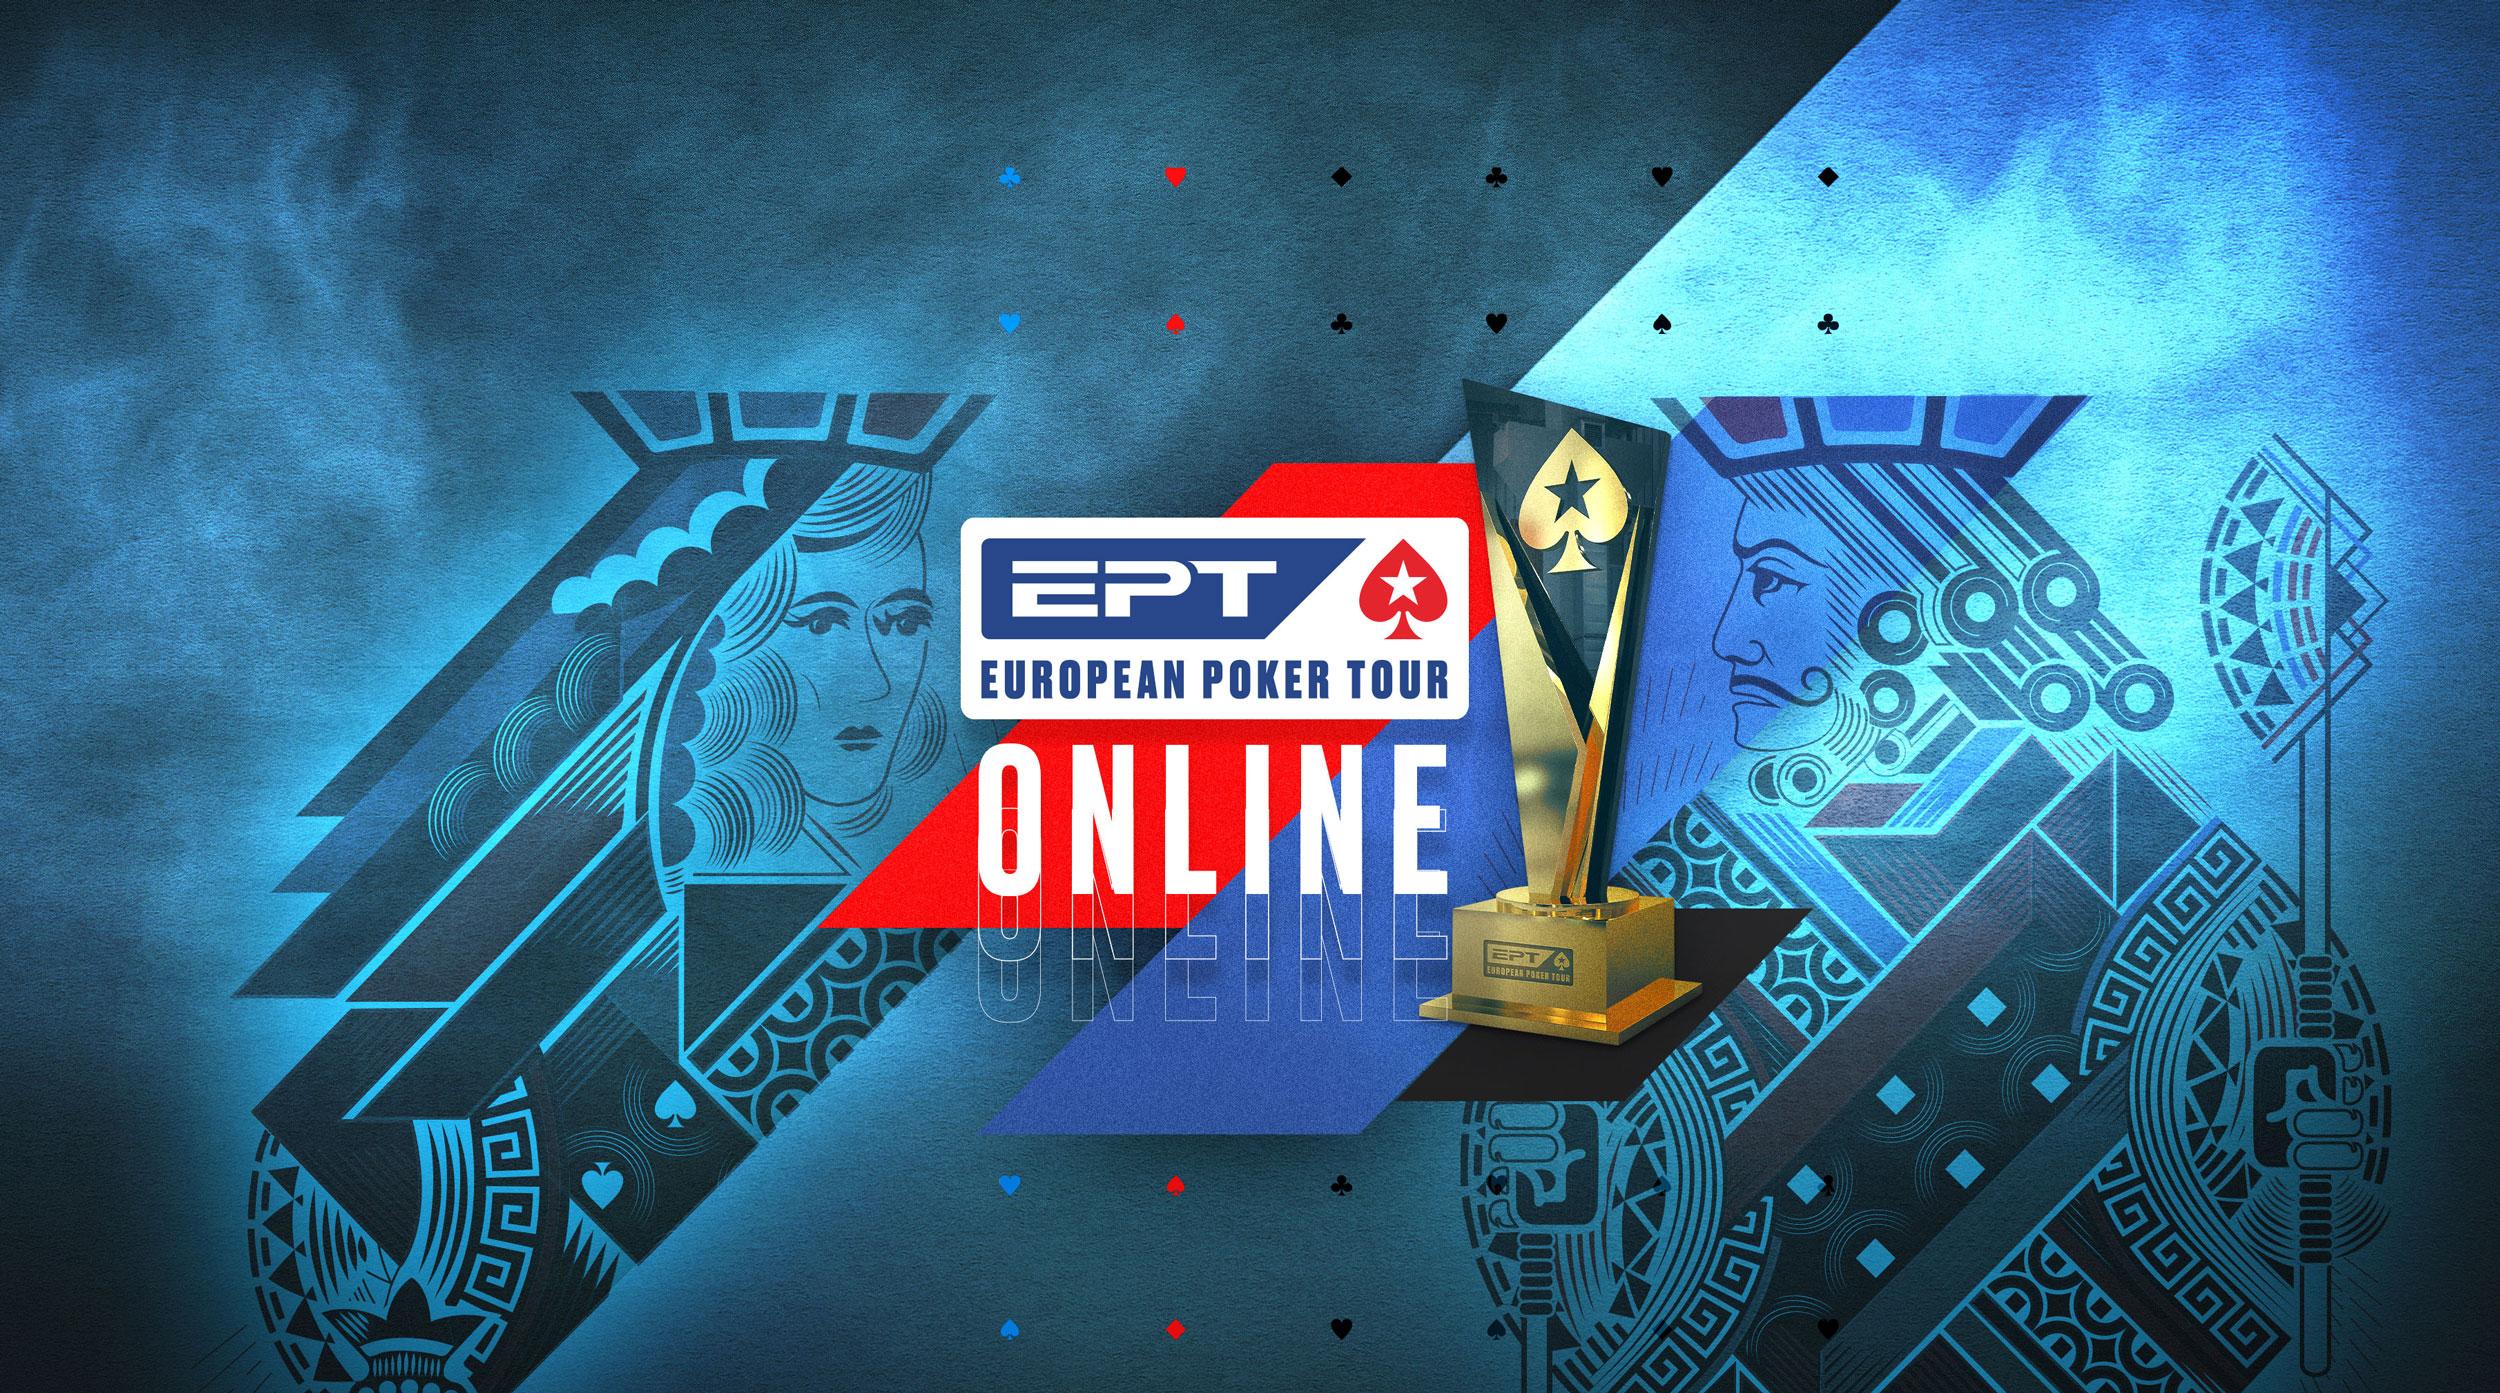 European Poker Tour Online (EPT ONLINE)